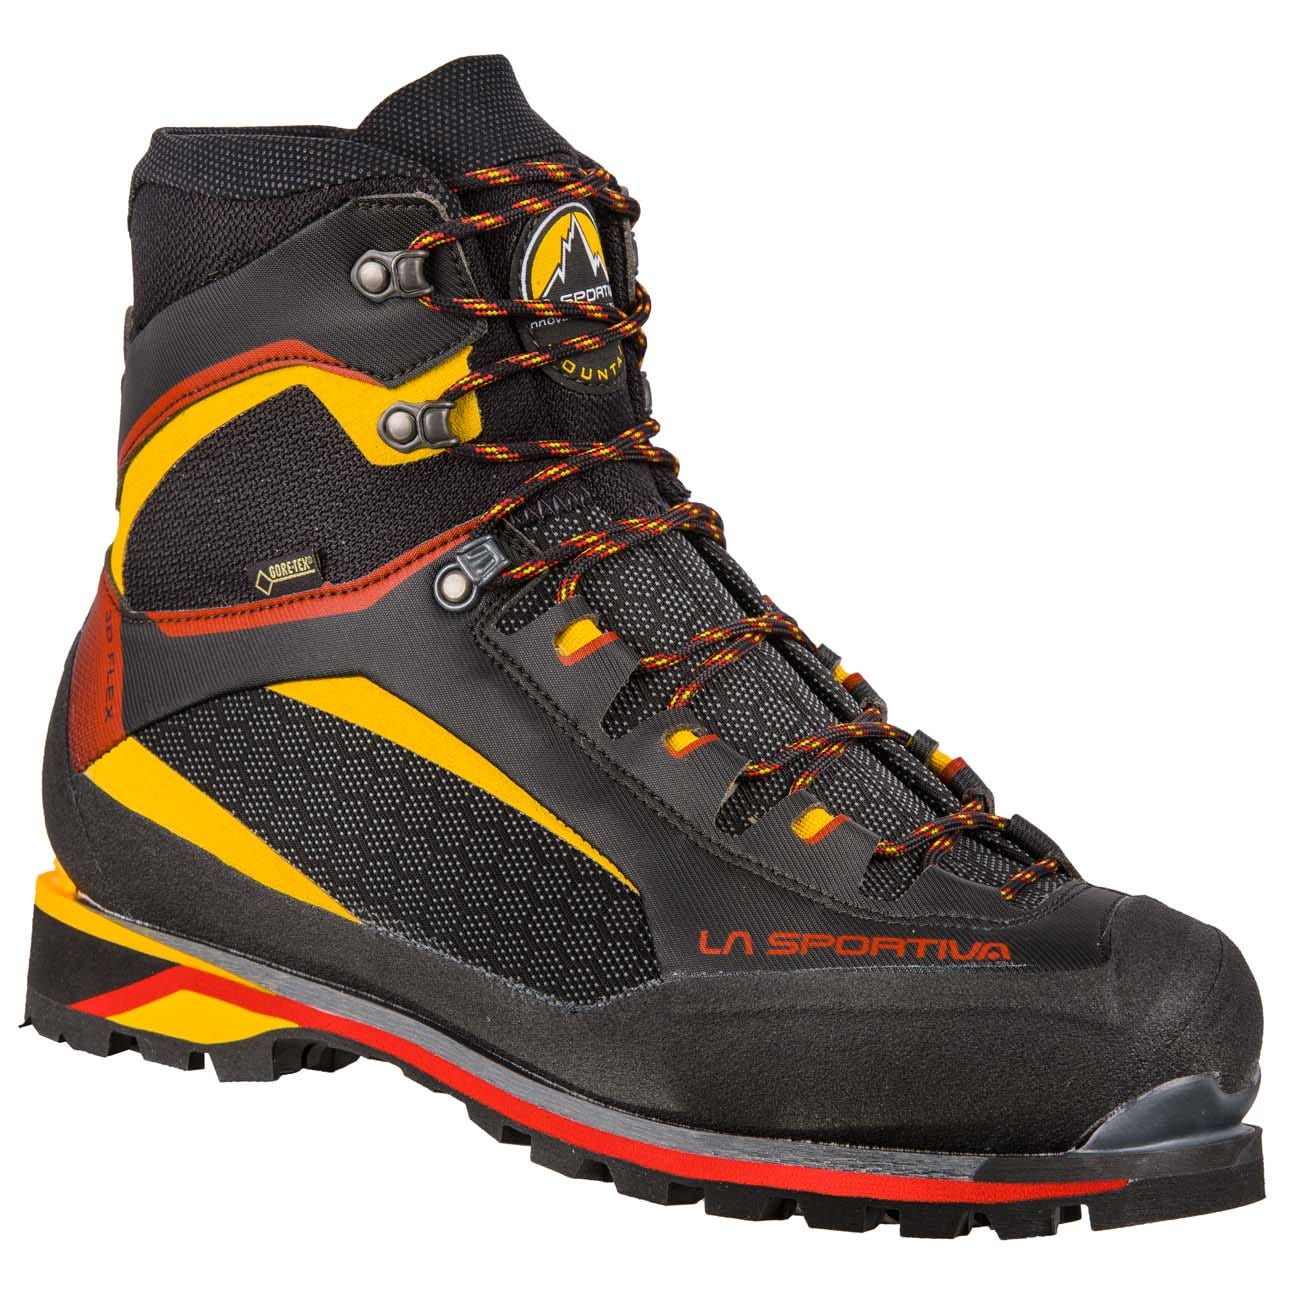 Альпинистские ботинки для микстовых маршрутов La Sportiva Trango Tower Extreme Gtx